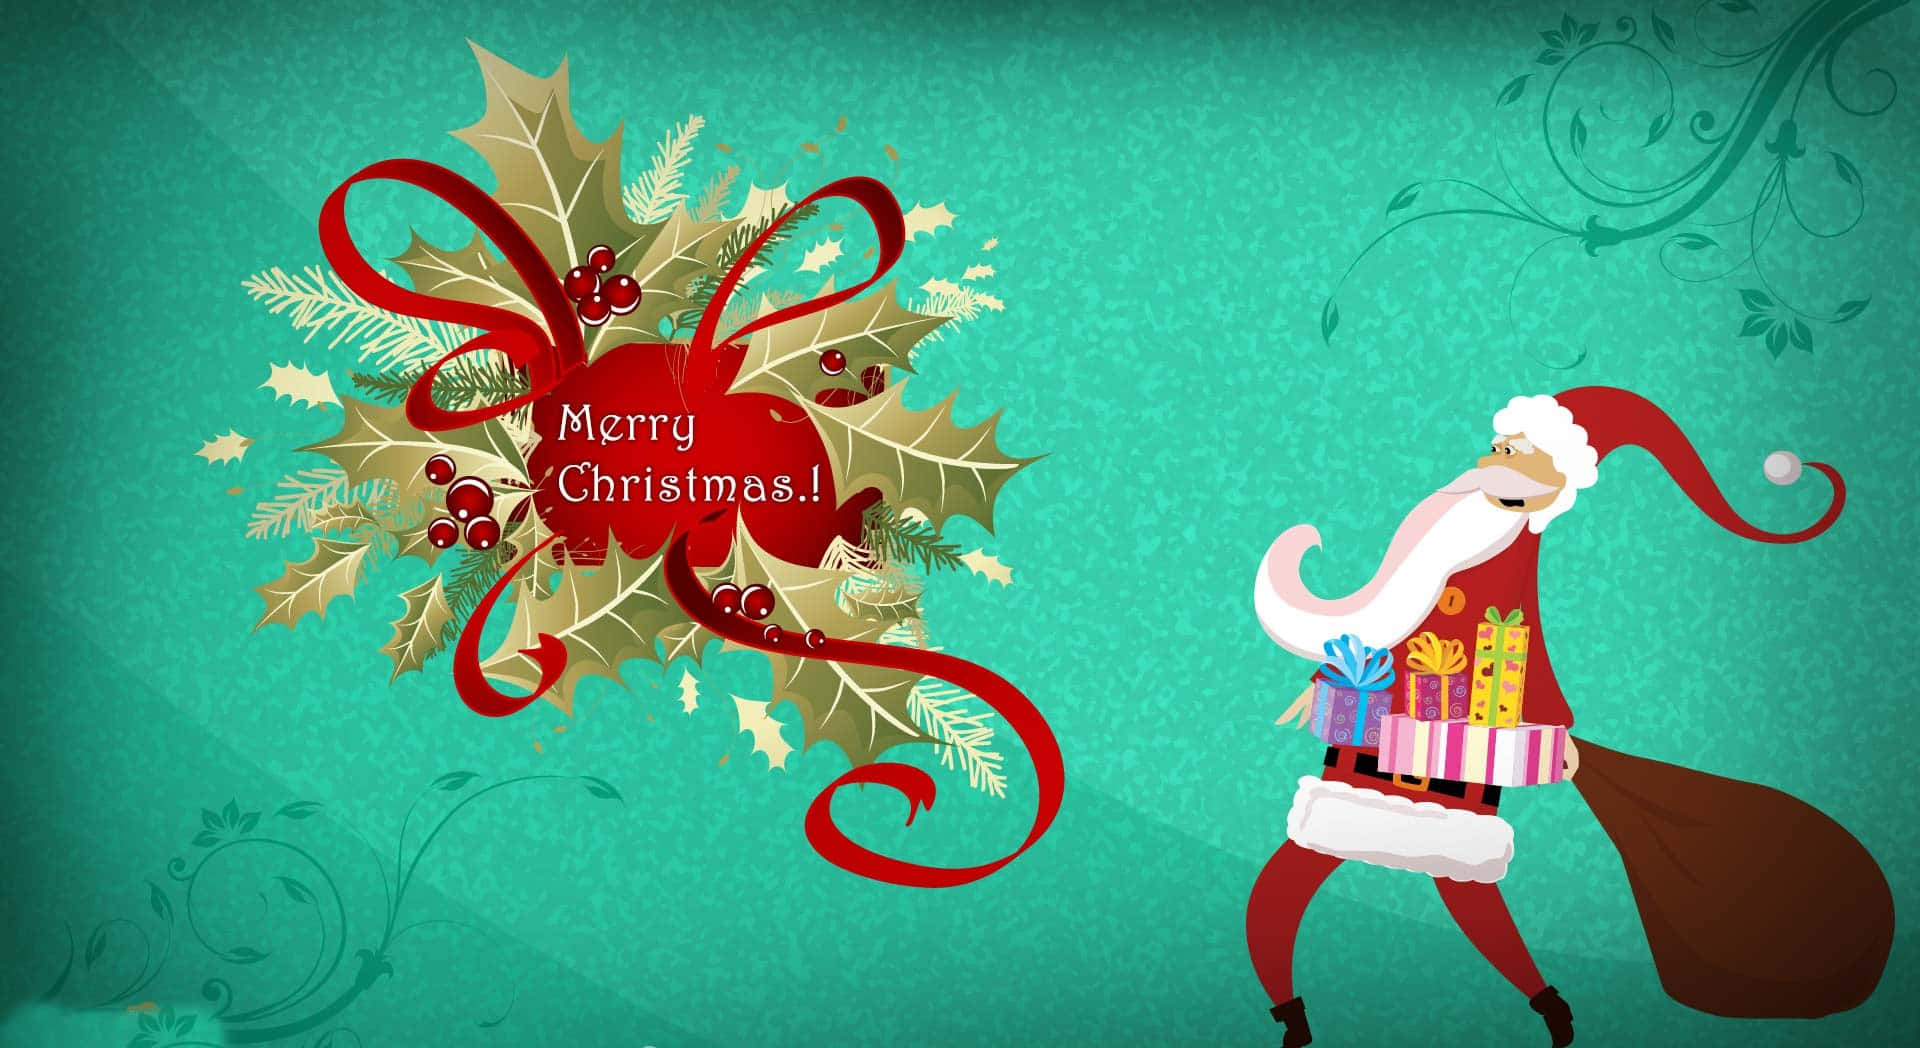 Lustigerweihnachts-zoom-hintergrund Mit Dem Weihnachtsmann - Frohe Feiertage